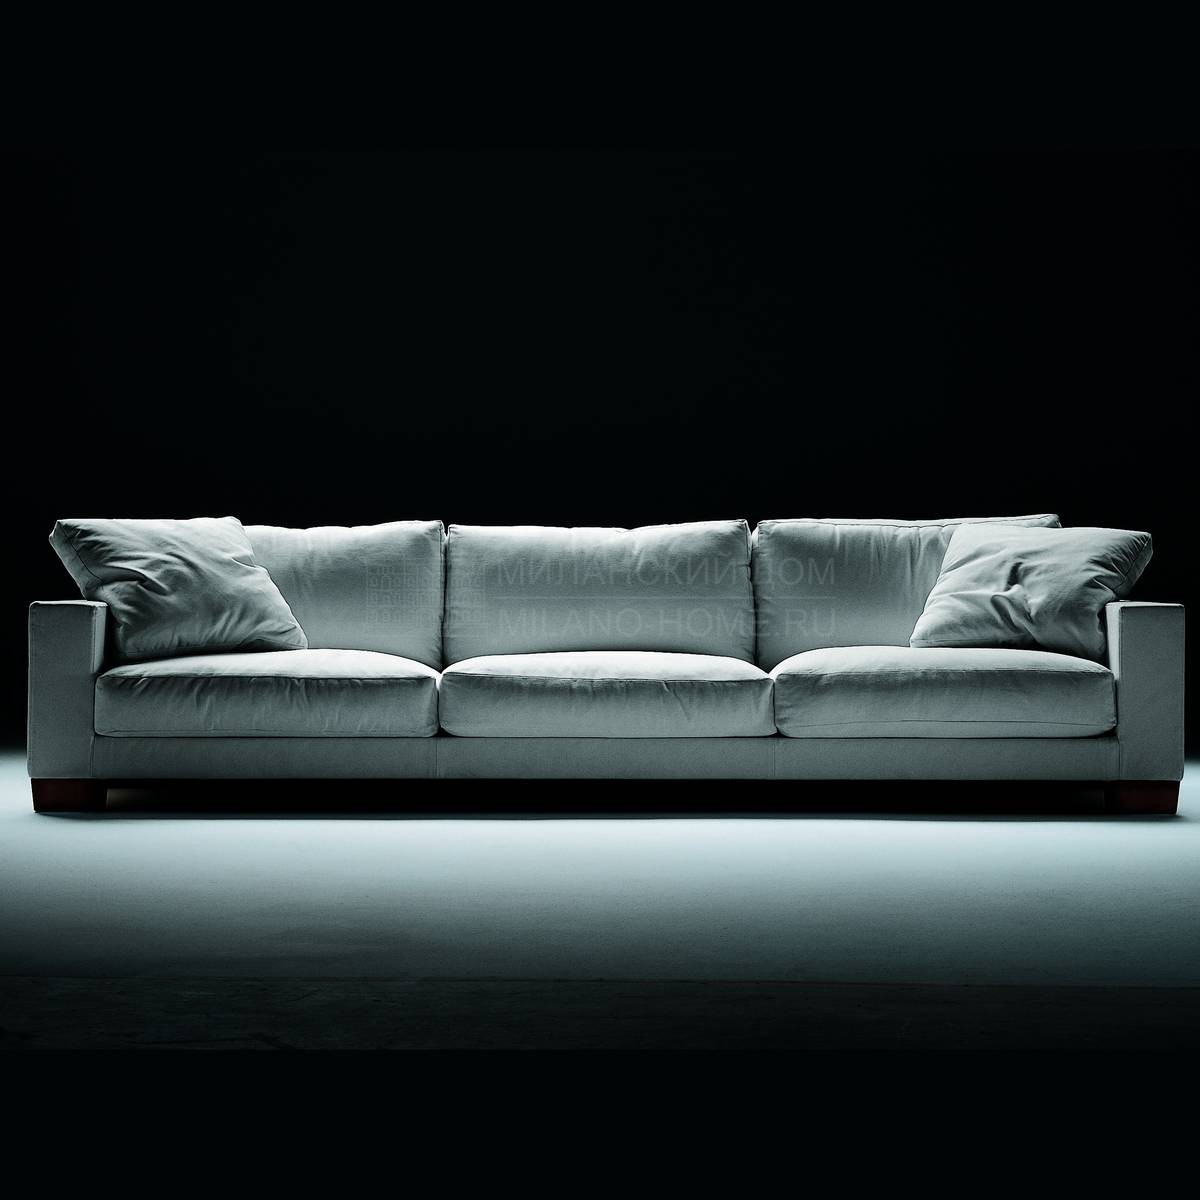 Прямой диван Status 02 /sofa из Италии фабрики FLEXFORM